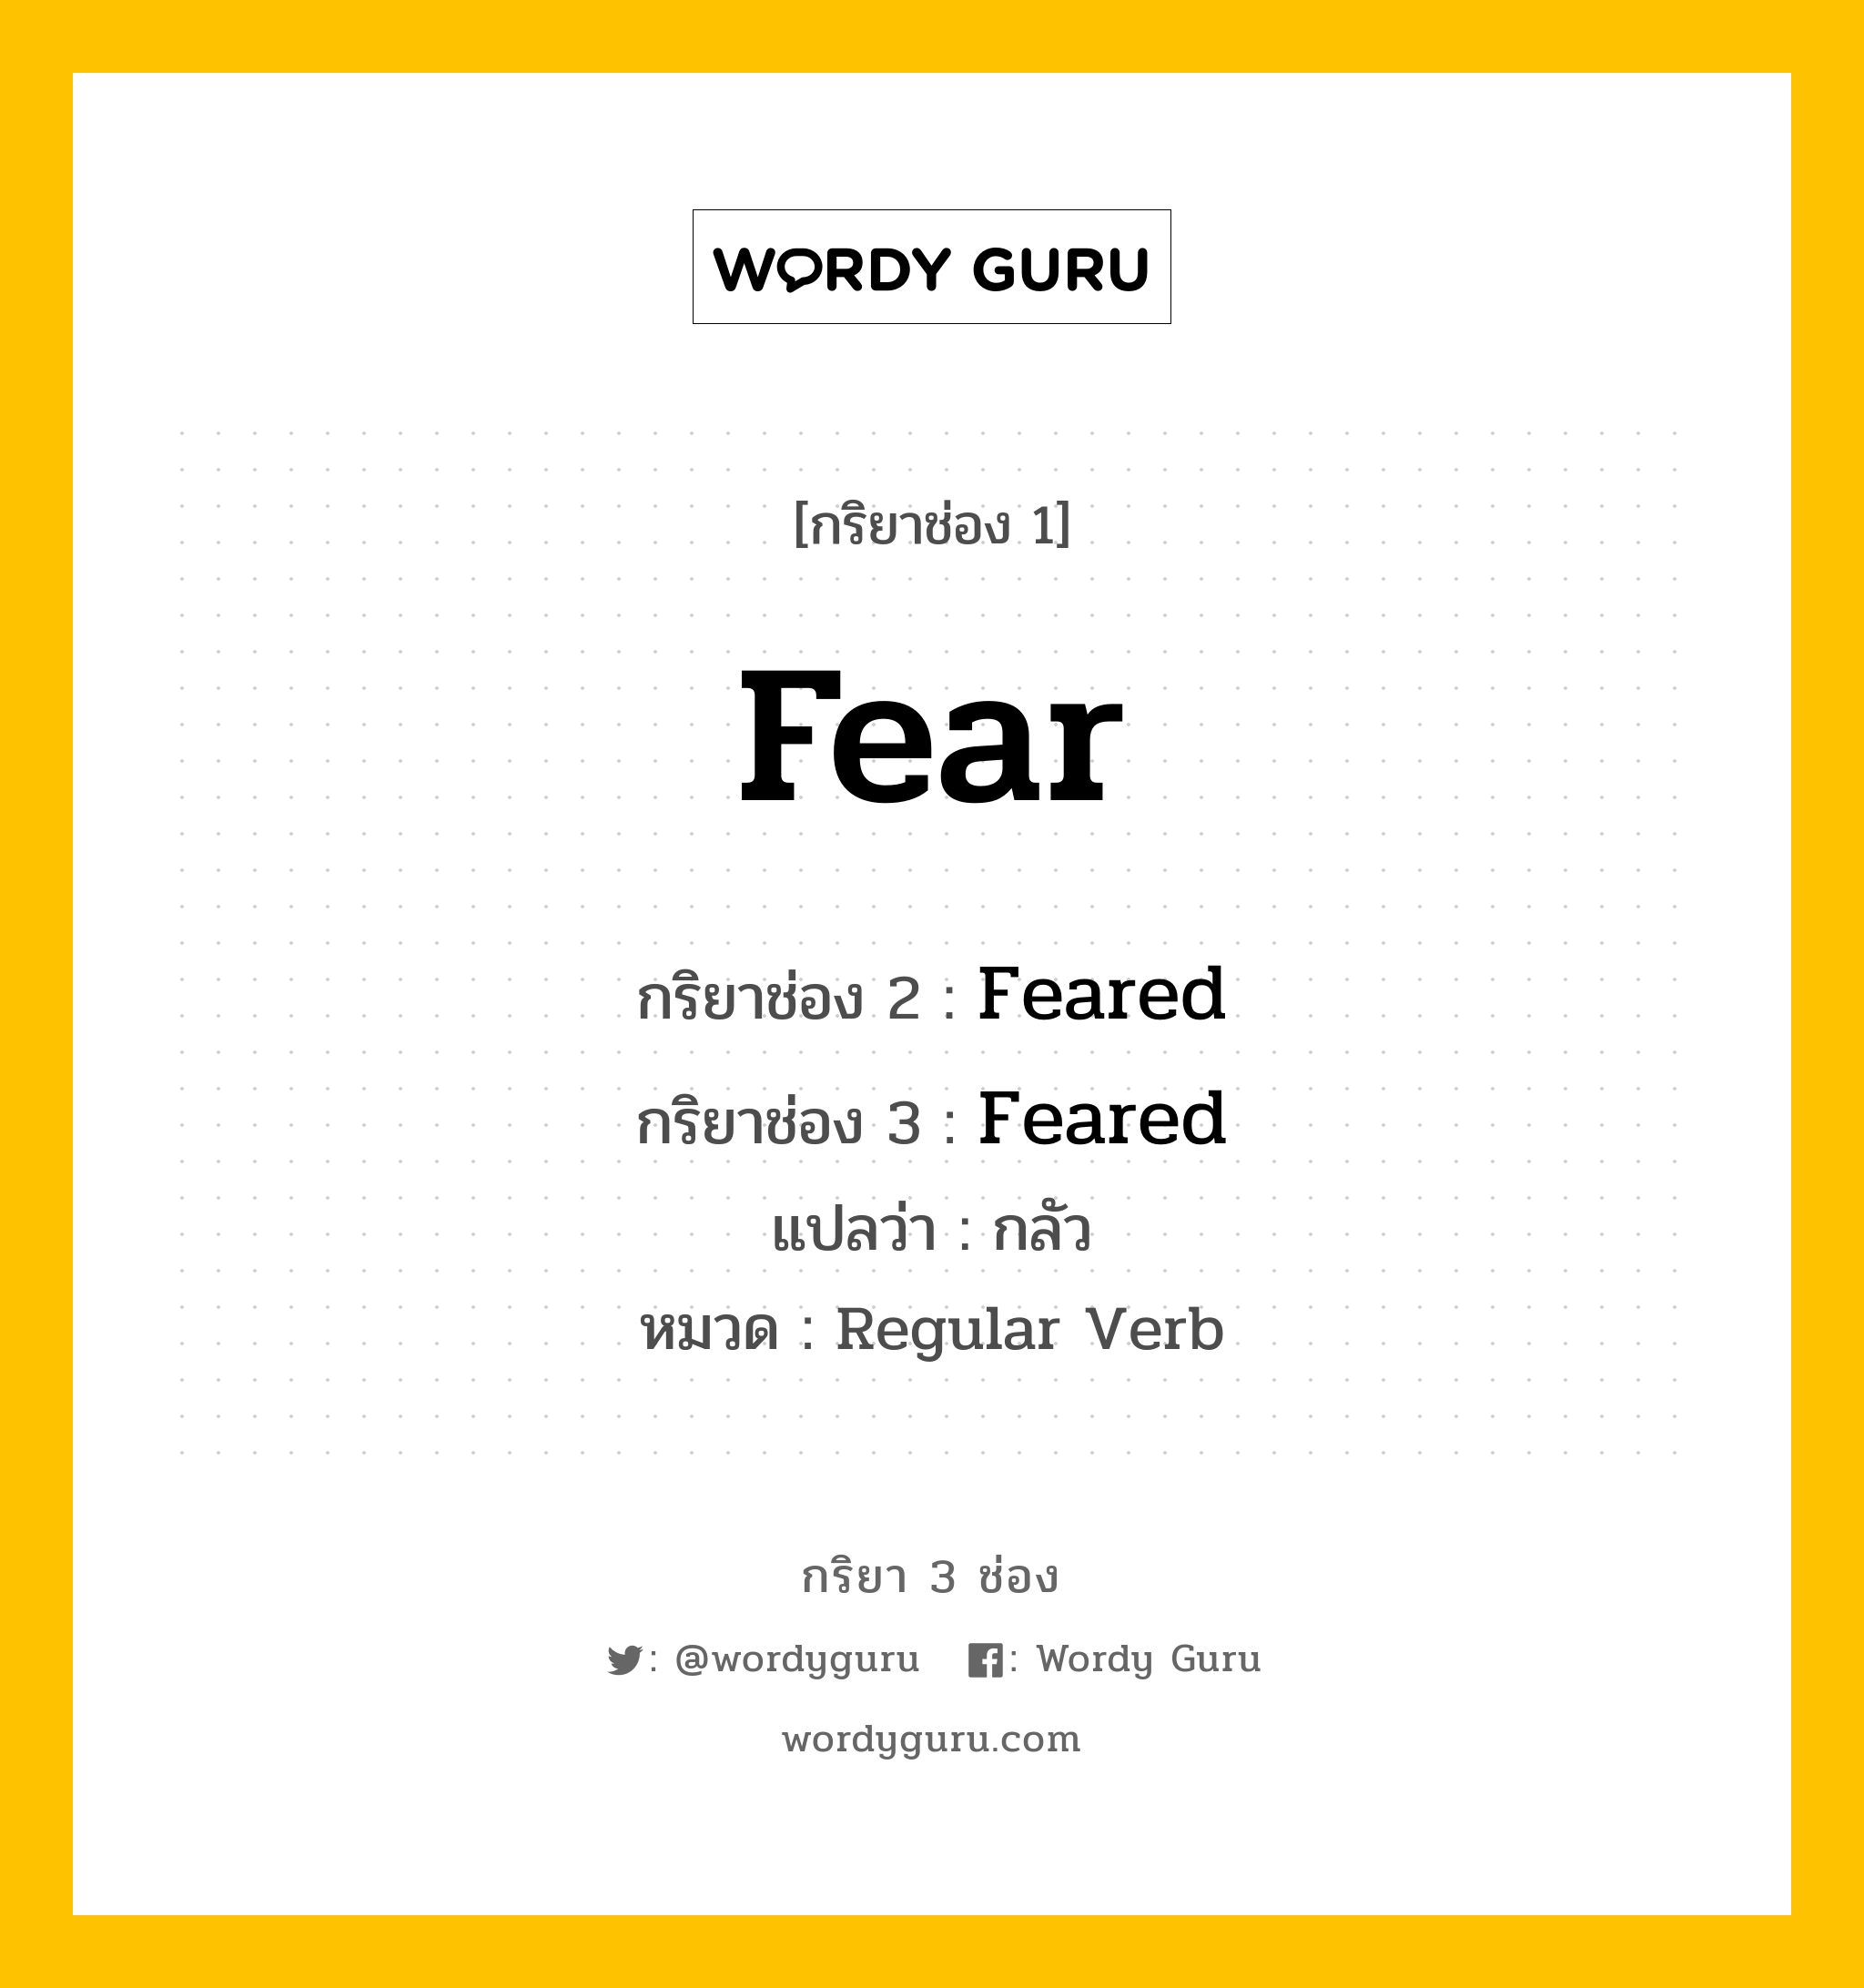 กริยา 3 ช่อง: Fear ช่อง 2 Fear ช่อง 3 คืออะไร, กริยาช่อง 1 Fear กริยาช่อง 2 Feared กริยาช่อง 3 Feared แปลว่า กลัว หมวด Regular Verb หมวด Regular Verb